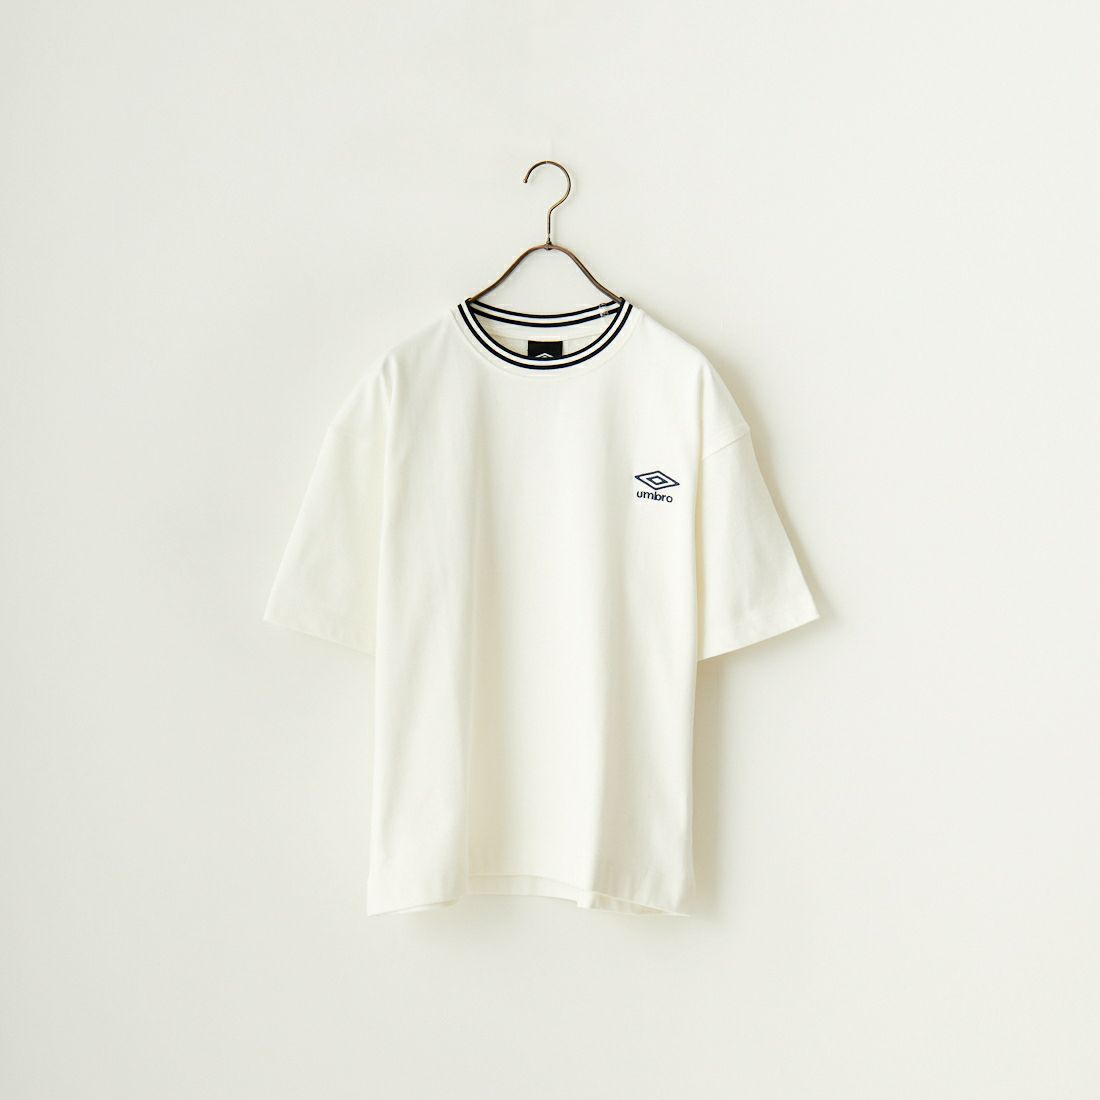 umbro [アンブロ] 別注 ワンポイントロゴ刺繍 ショートスリーブTシャツ [UMNK-T0022-JF] WHITE